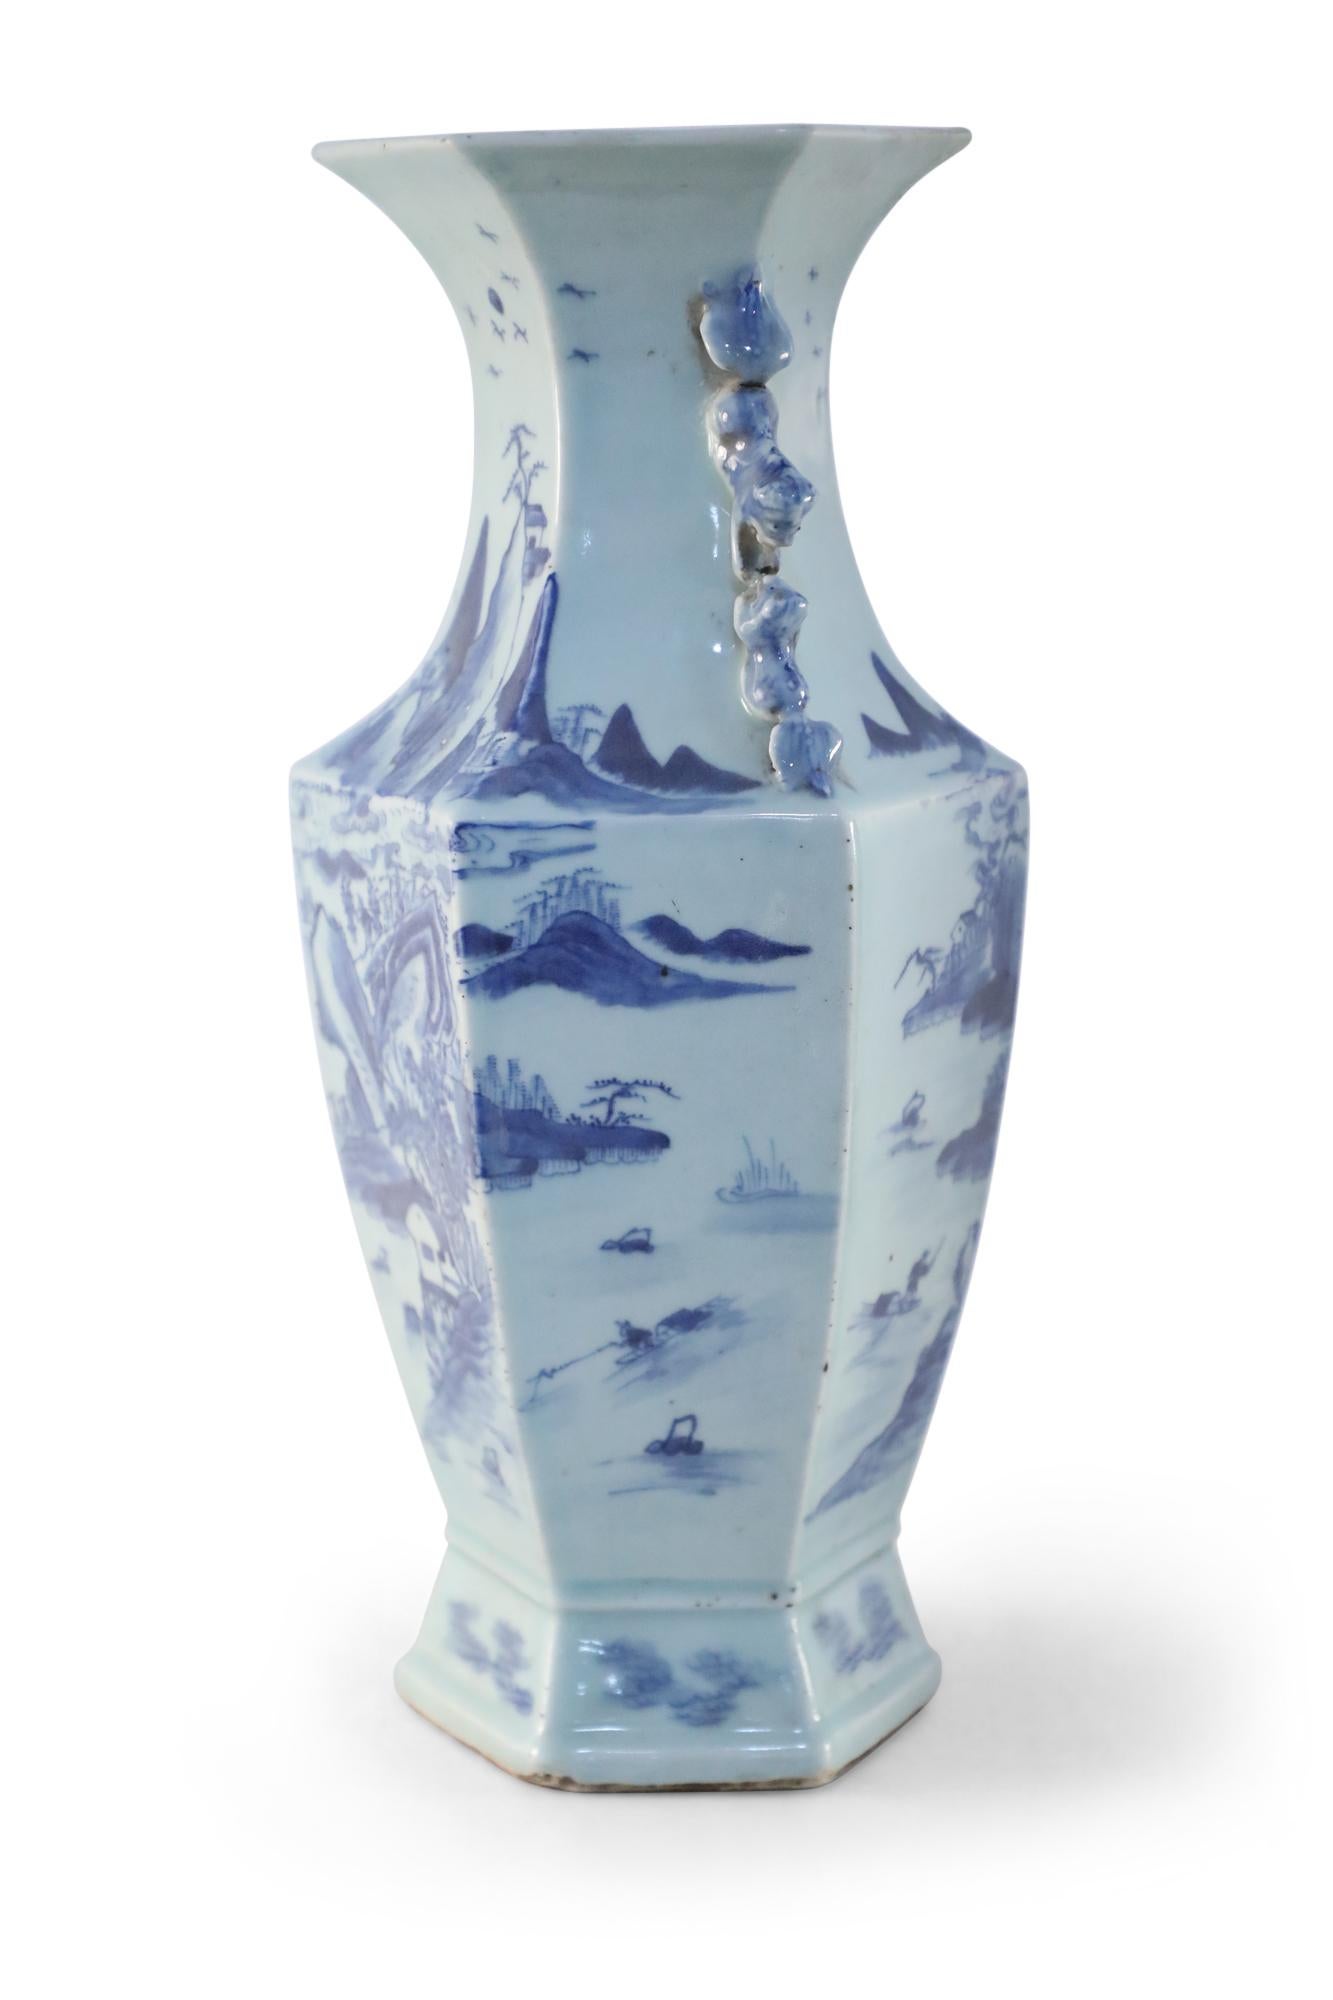 Vase antique chinois (début du 20e siècle) en porcelaine bleue et blanche de forme hexagonale représentant une scène de village et la nature environnante et accentué par des poignées en volutes bleues au niveau du col.
 